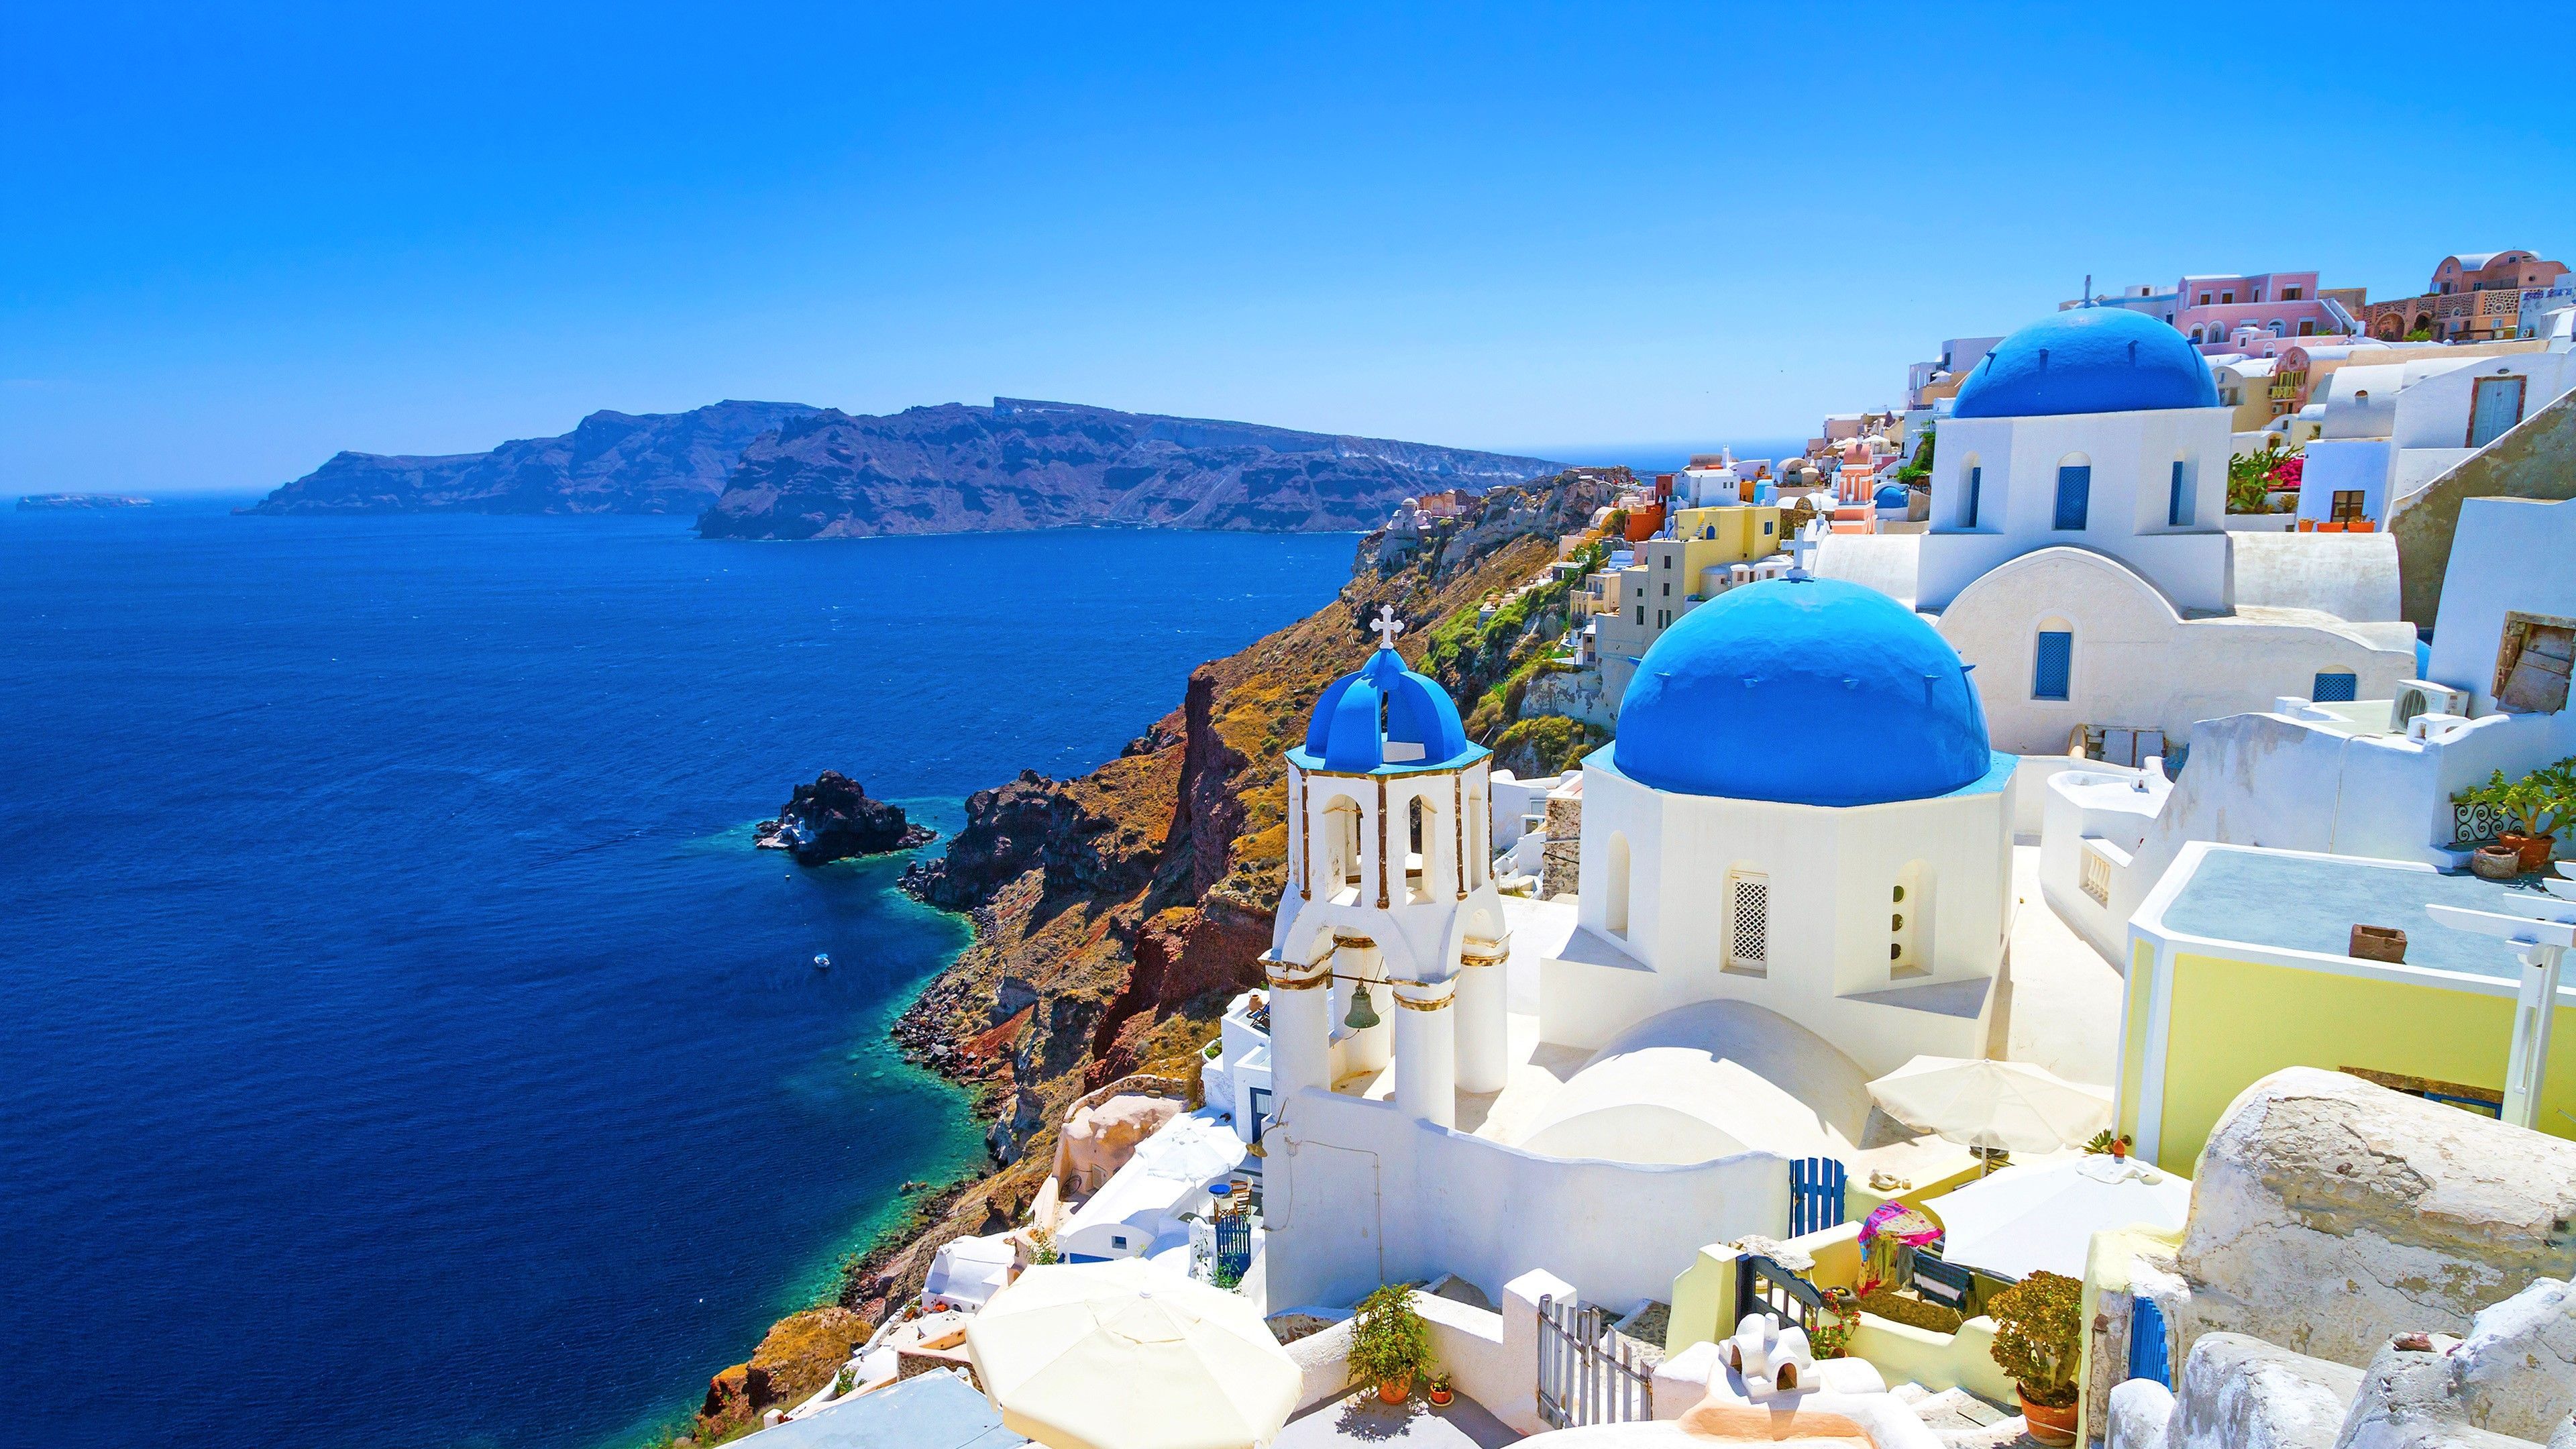 Hy Lạp là một quốc gia nổi tiếng với những bãi biển đẹp và những di sản văn hóa cổ đại. Bất cứ ai cũng đều muốn tham quan Hy Lạp ít nhất một lần trong đời. Thật tuyệt vời khi chụp lại những khoảnh khắc ấn tượng và có thể lưu giữ chúng dưới hình dạng của hình nền Hy Lạp để tưởng nhớ những giây phút đã trải qua.